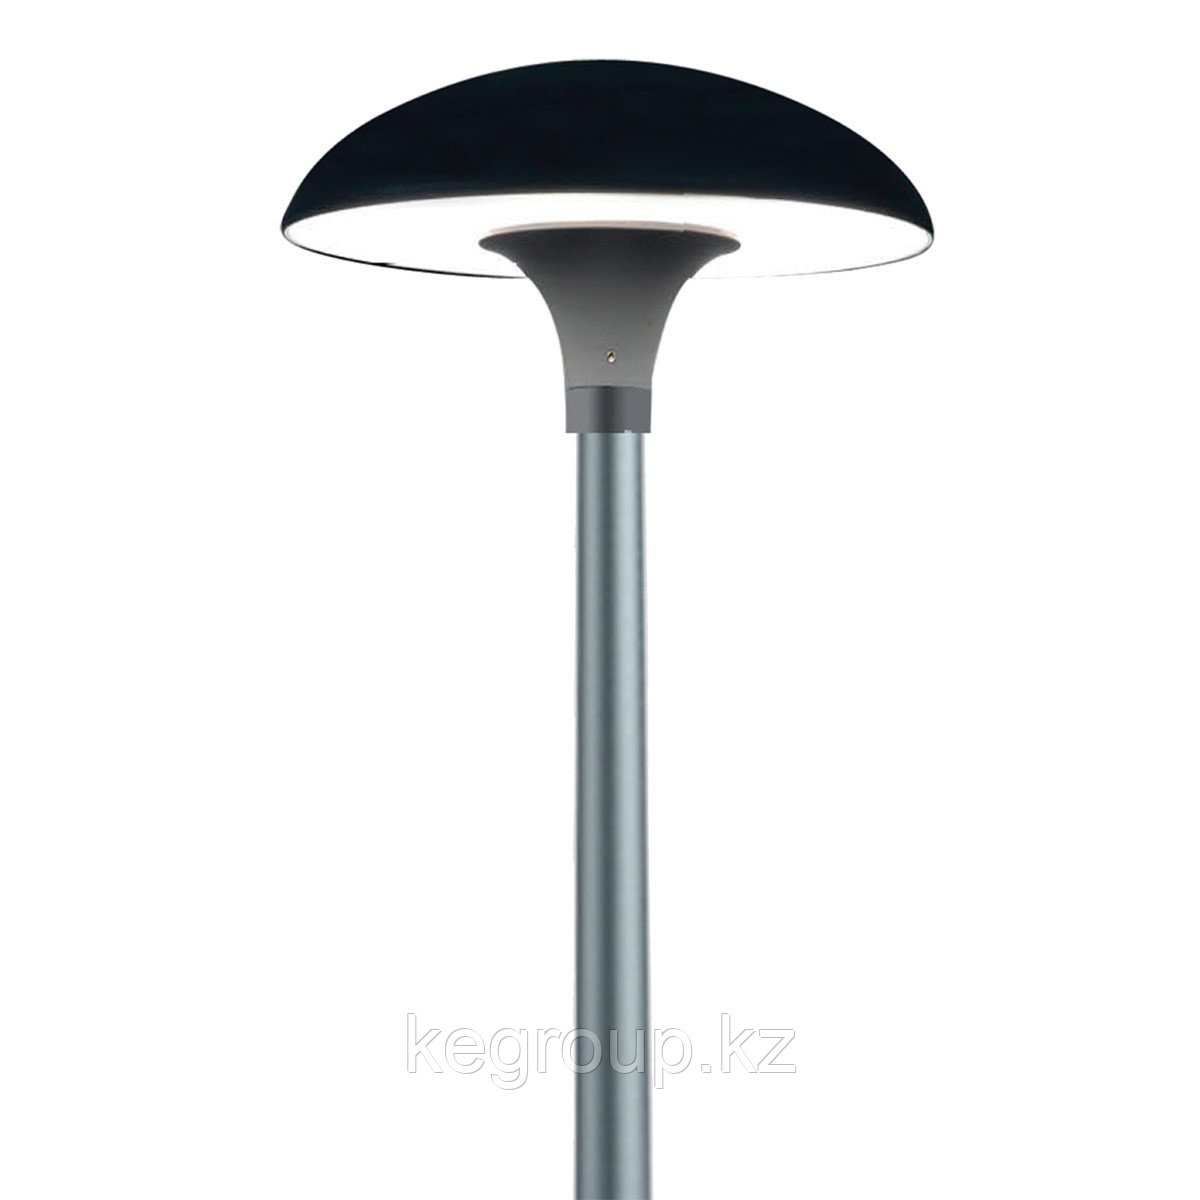 Светодиодный светильник городского освещение LED YM6132A 100W 5700K IP65 (без трубы)(TS) KE Group